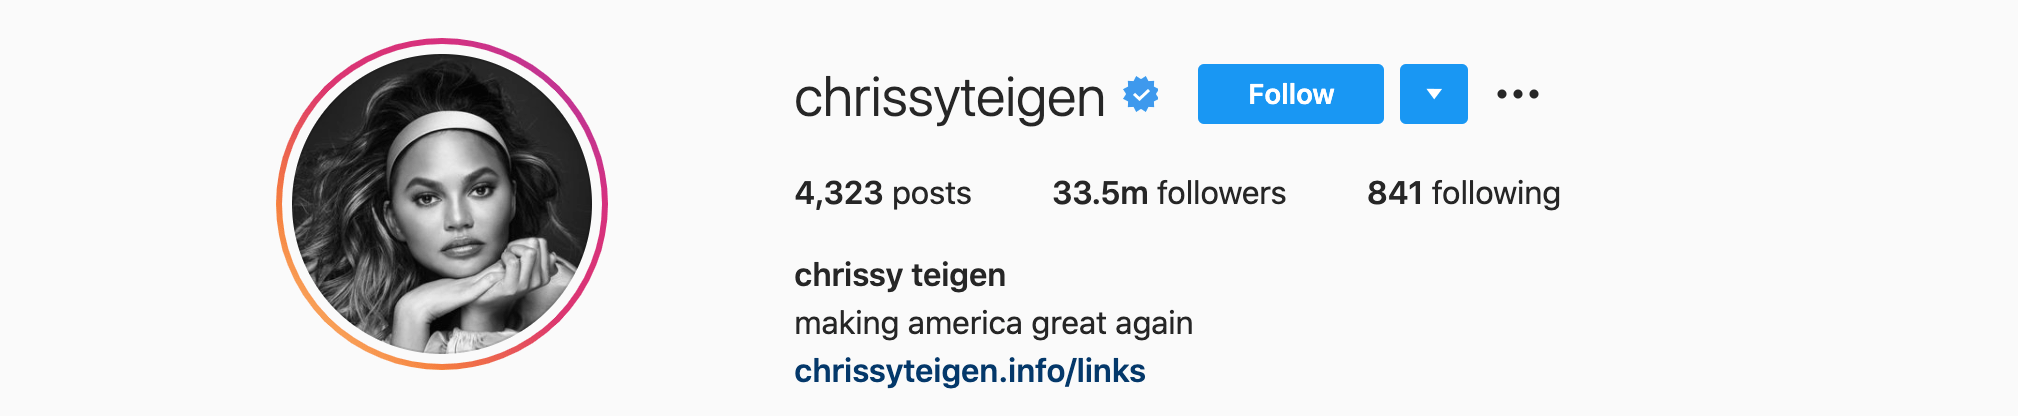 Top Instagram Influencers - CHRISSY TEIGEN